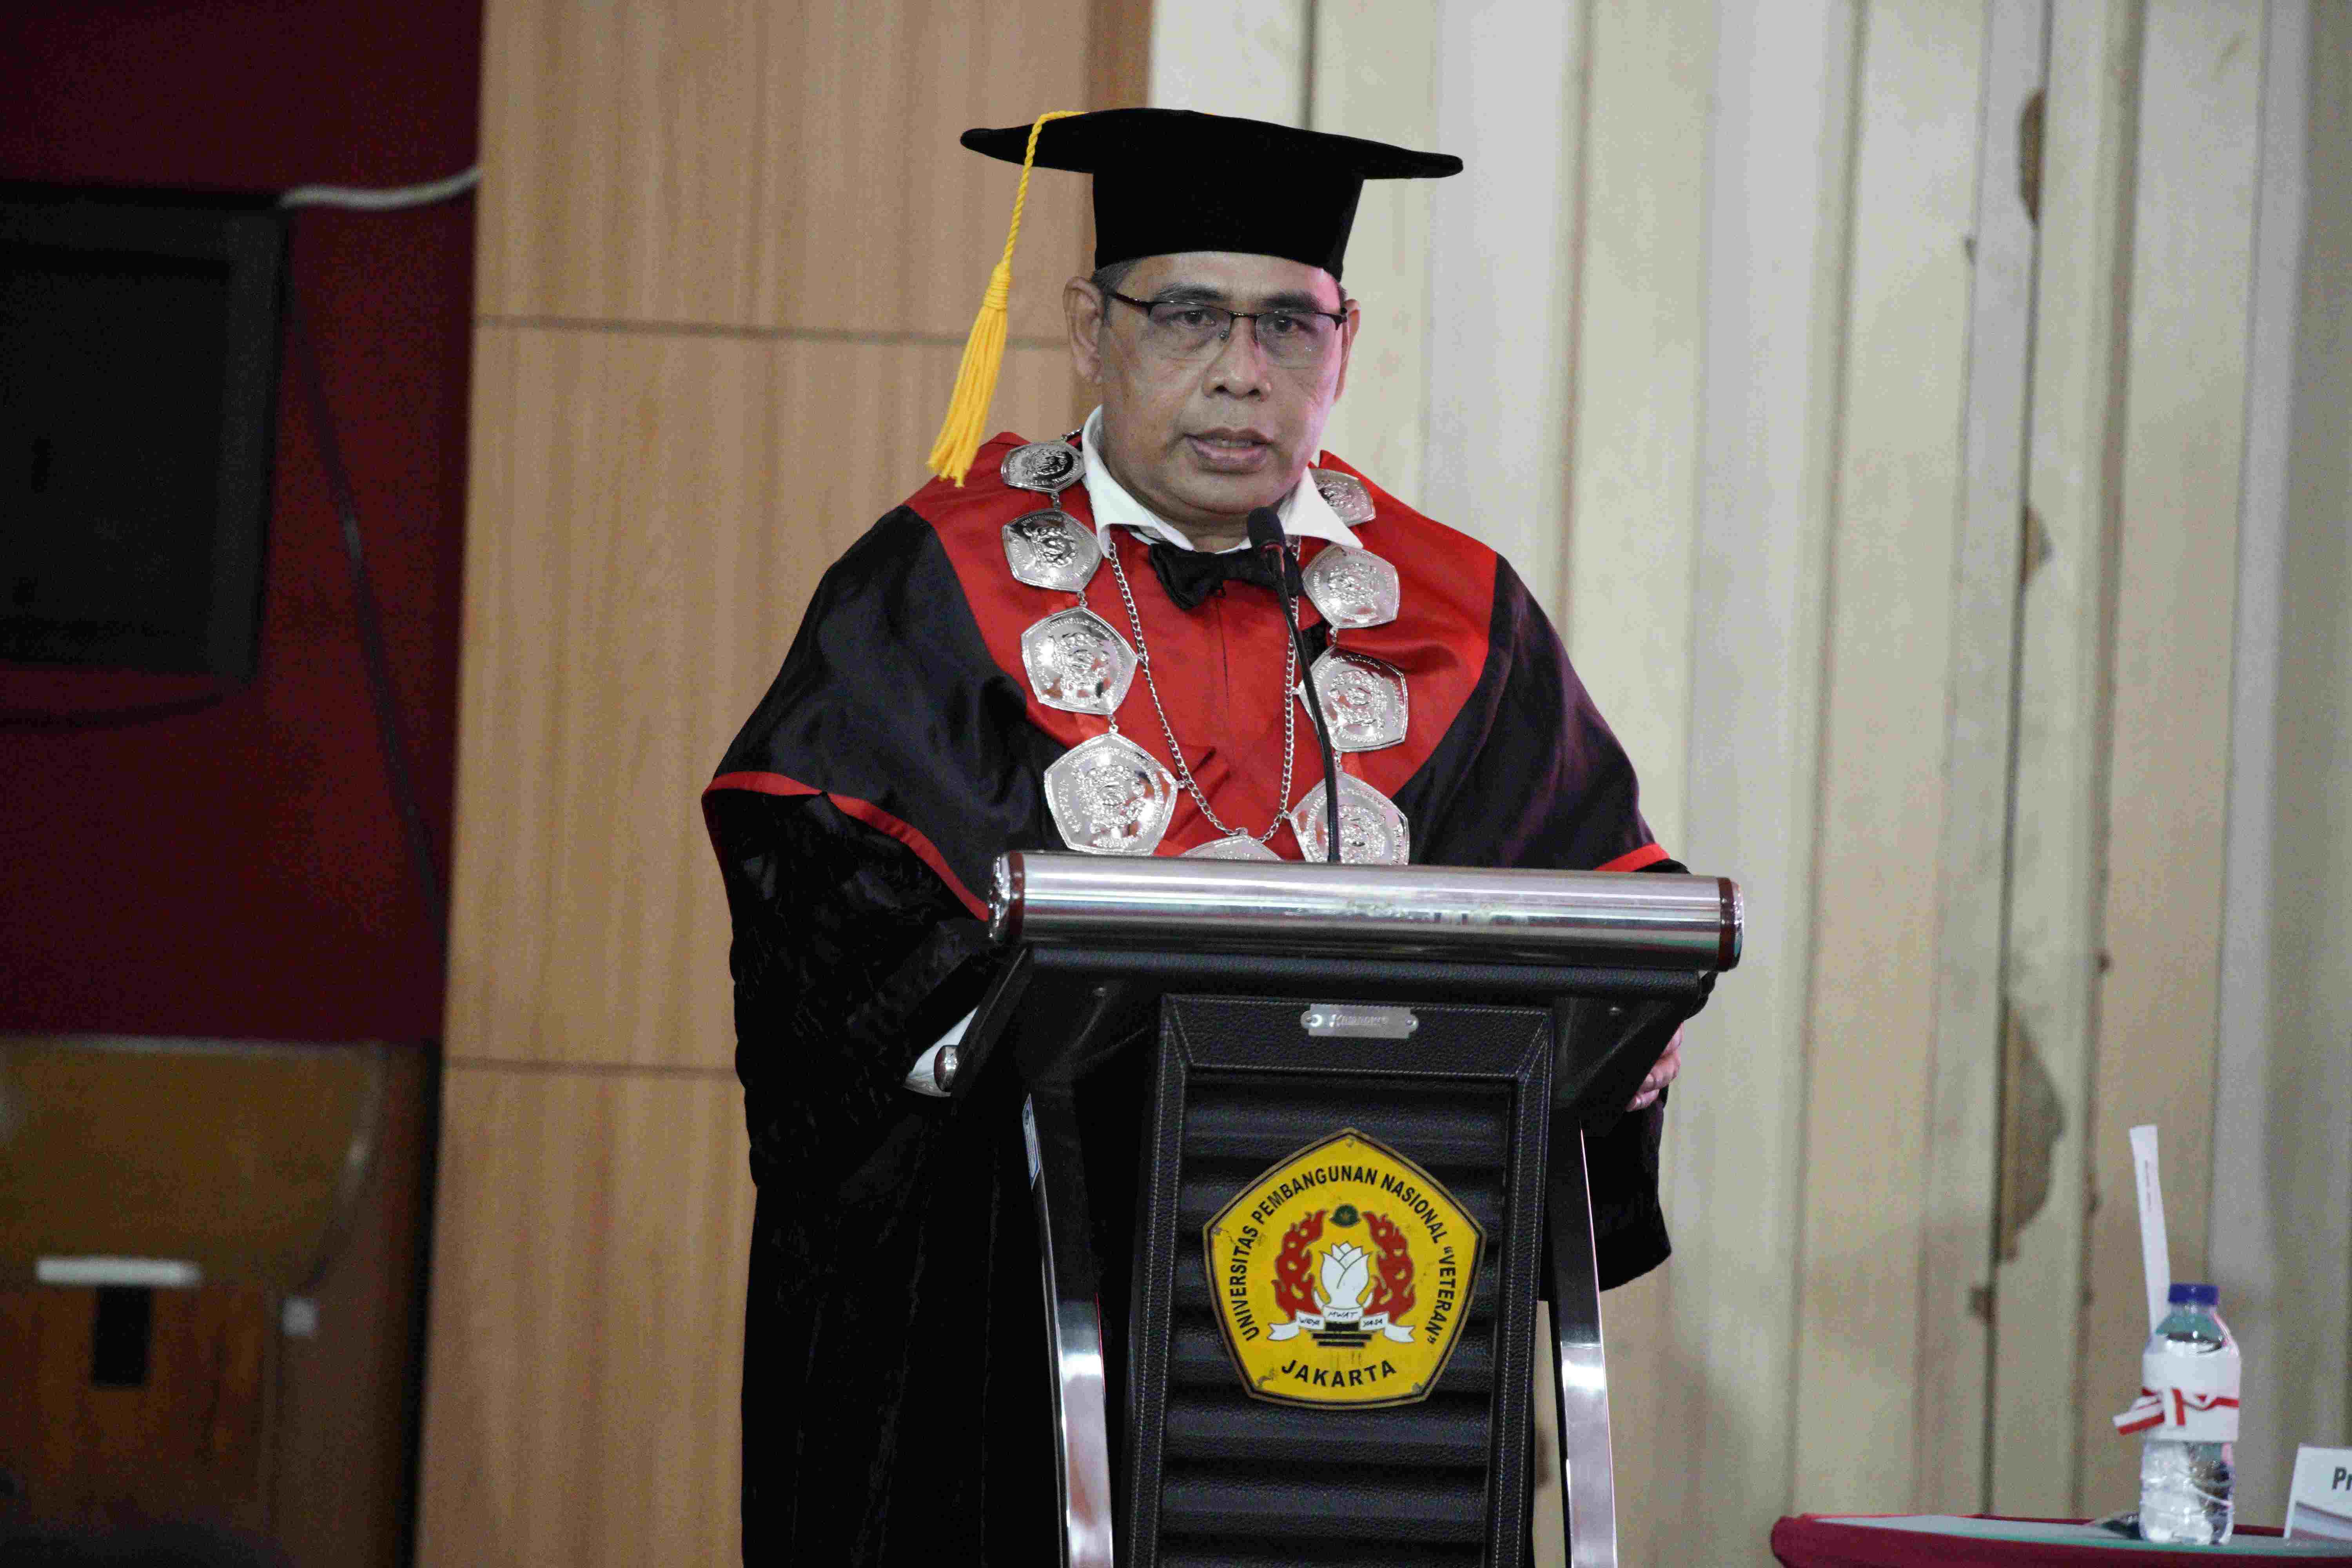 Pengukuhan Prof Dr Wicipto Setiadi SH MH Guru Besar bidang Ilmu Hukum Fakultas Hukum Universitas Pembangunan Nasional Veteran Jakarta (268)